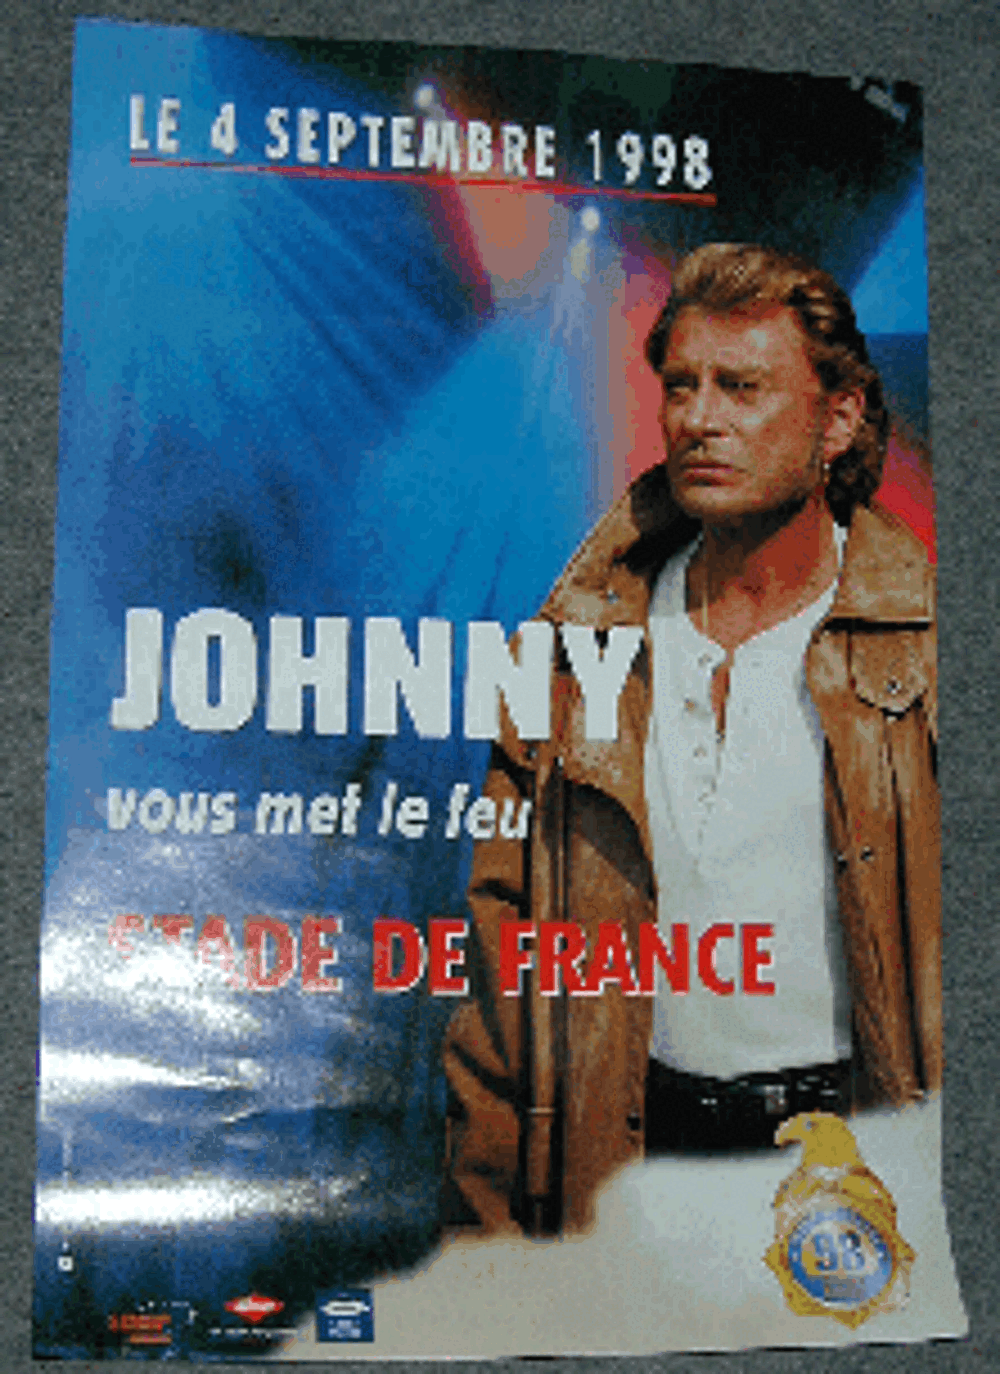 AFFICHE NEUVE JOHNNY HALLYDAY - STADE DE FRANCE 1998 MET LE 